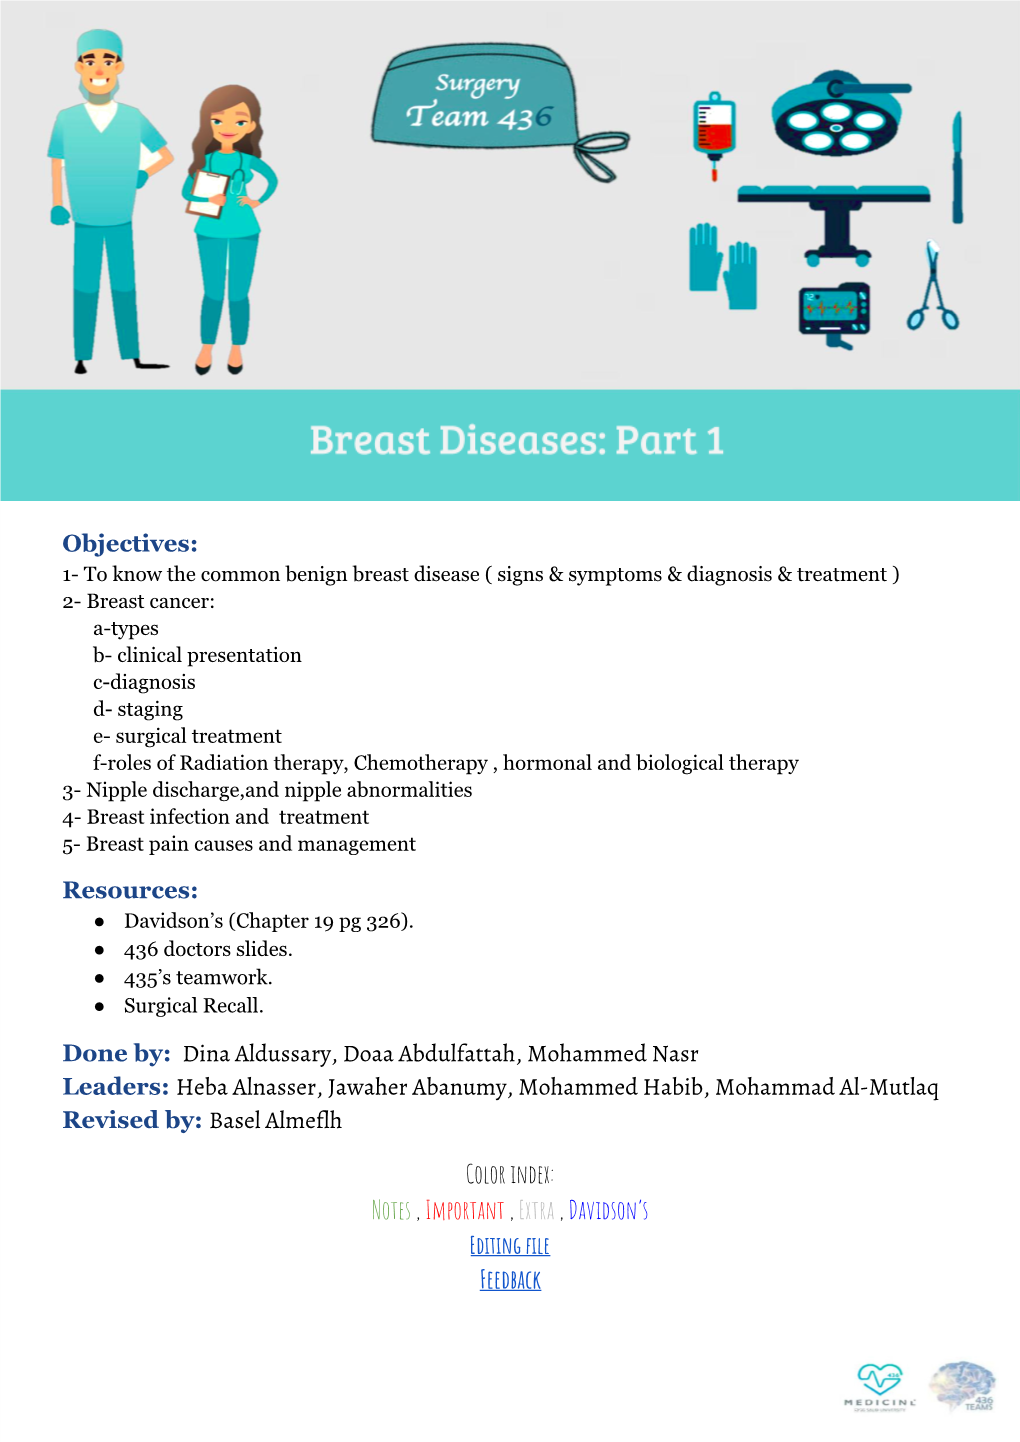 5. Breast Diseases